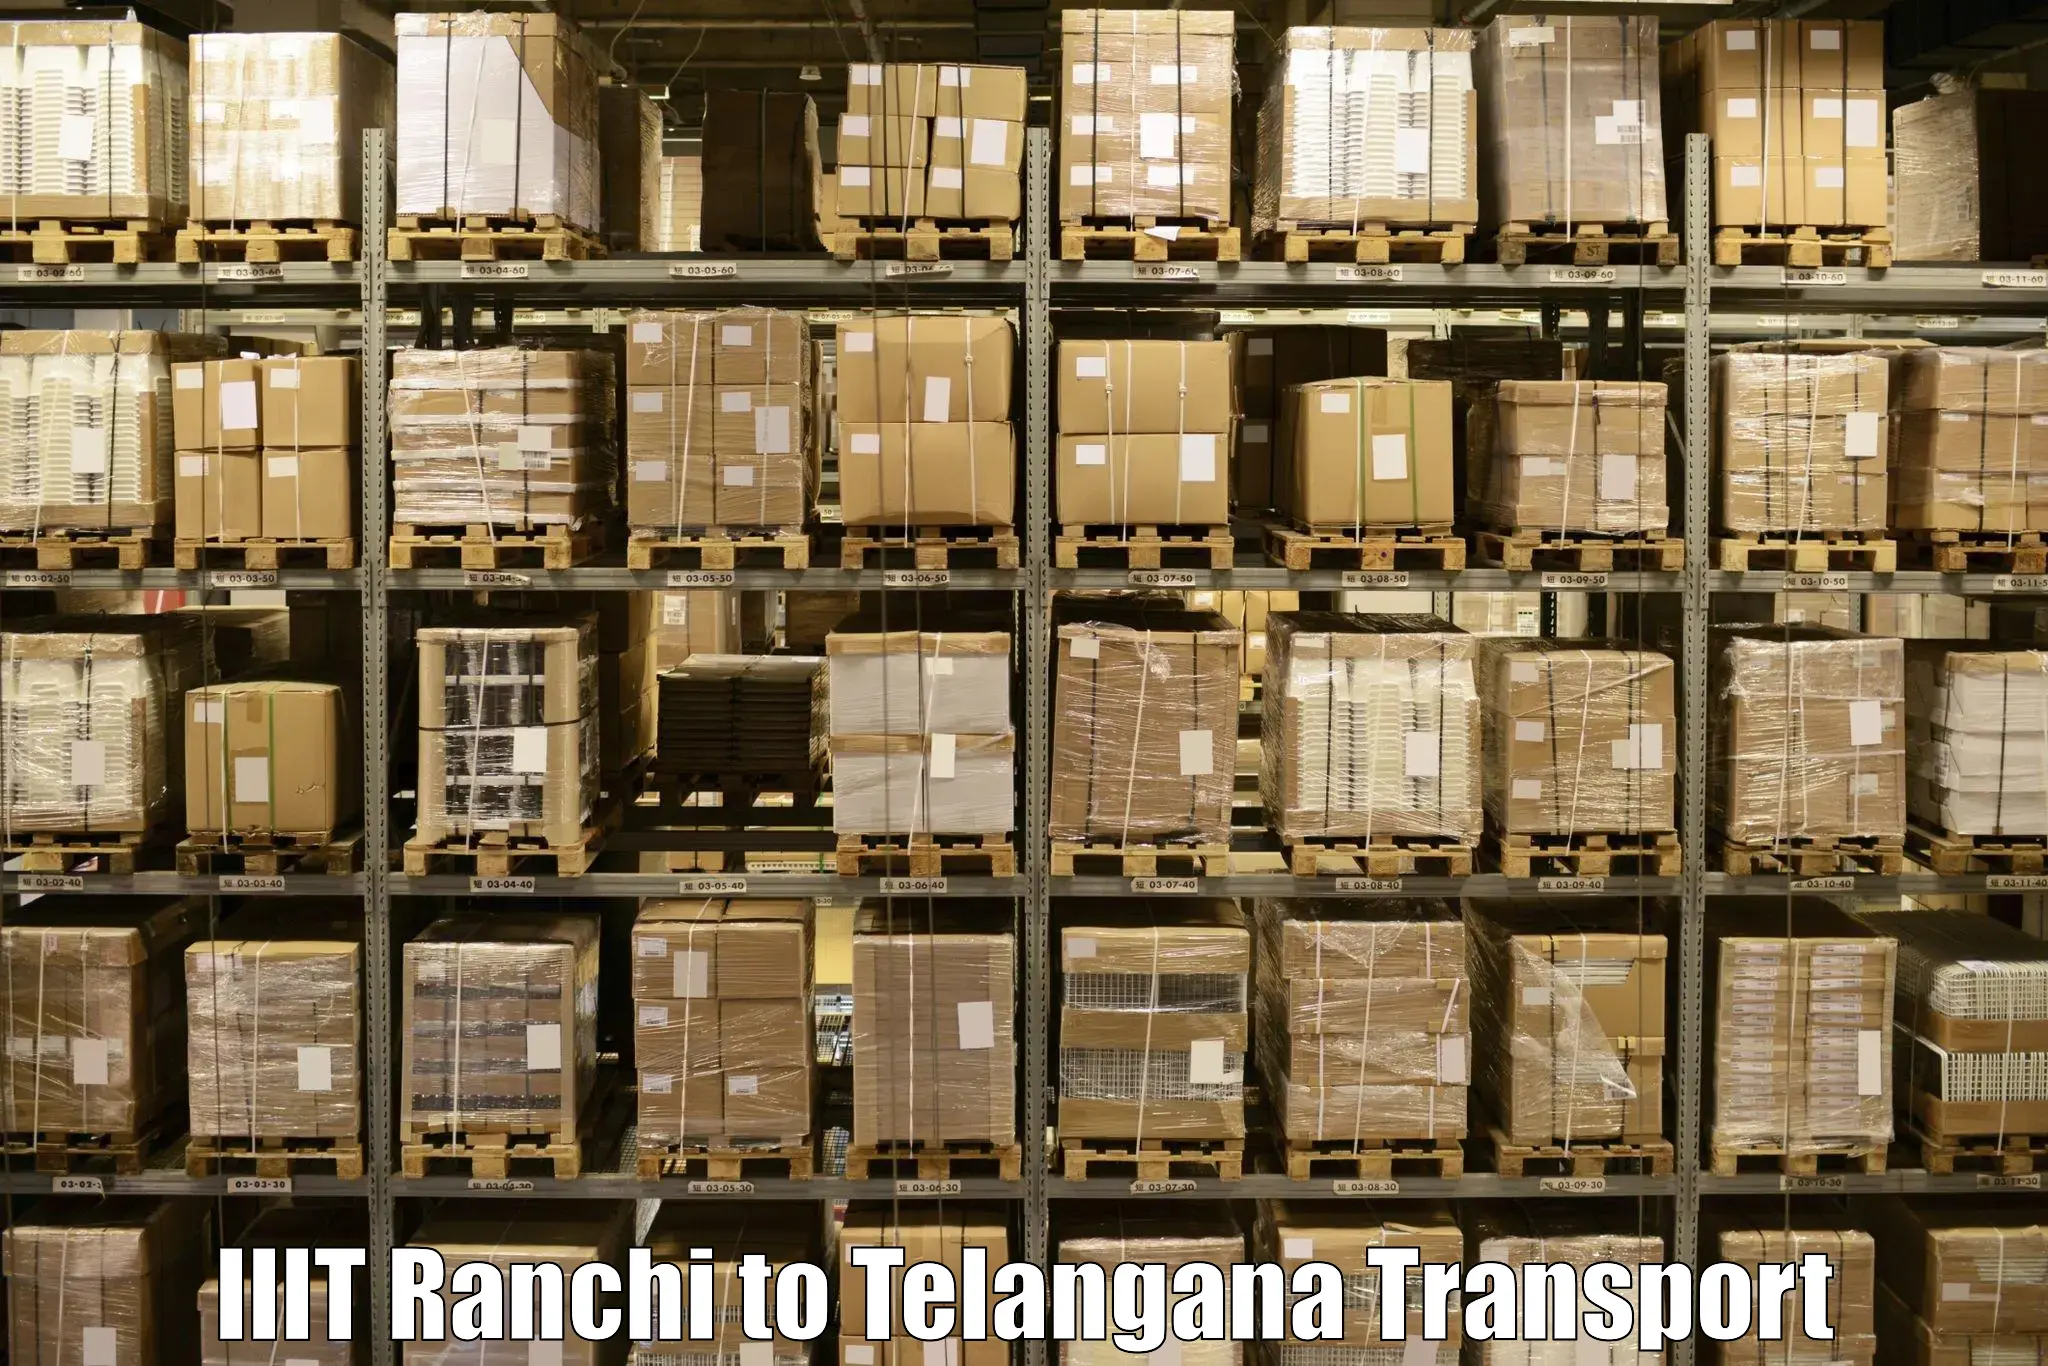 Transportation services IIIT Ranchi to Jammikunta